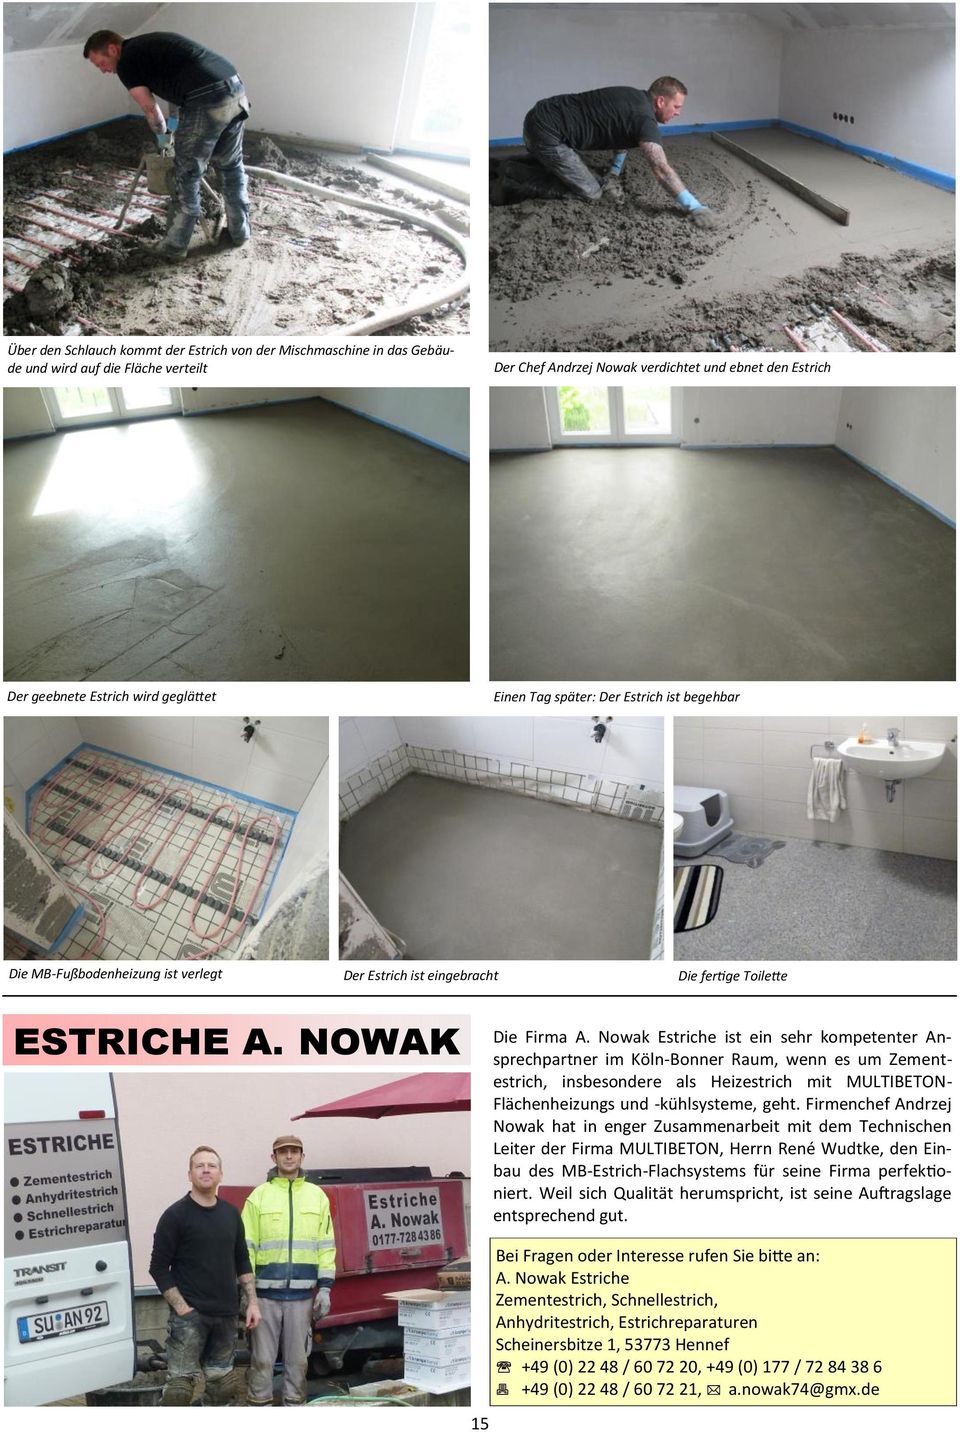 Nowak Estriche ist ein sehr kompetenter Ansprechpartner im Köln-Bonner Raum, wenn es um Zementestrich, insbesondere als Heizestrich mit MULTIBETON- Flächenheizungs und -kühlsysteme, geht.